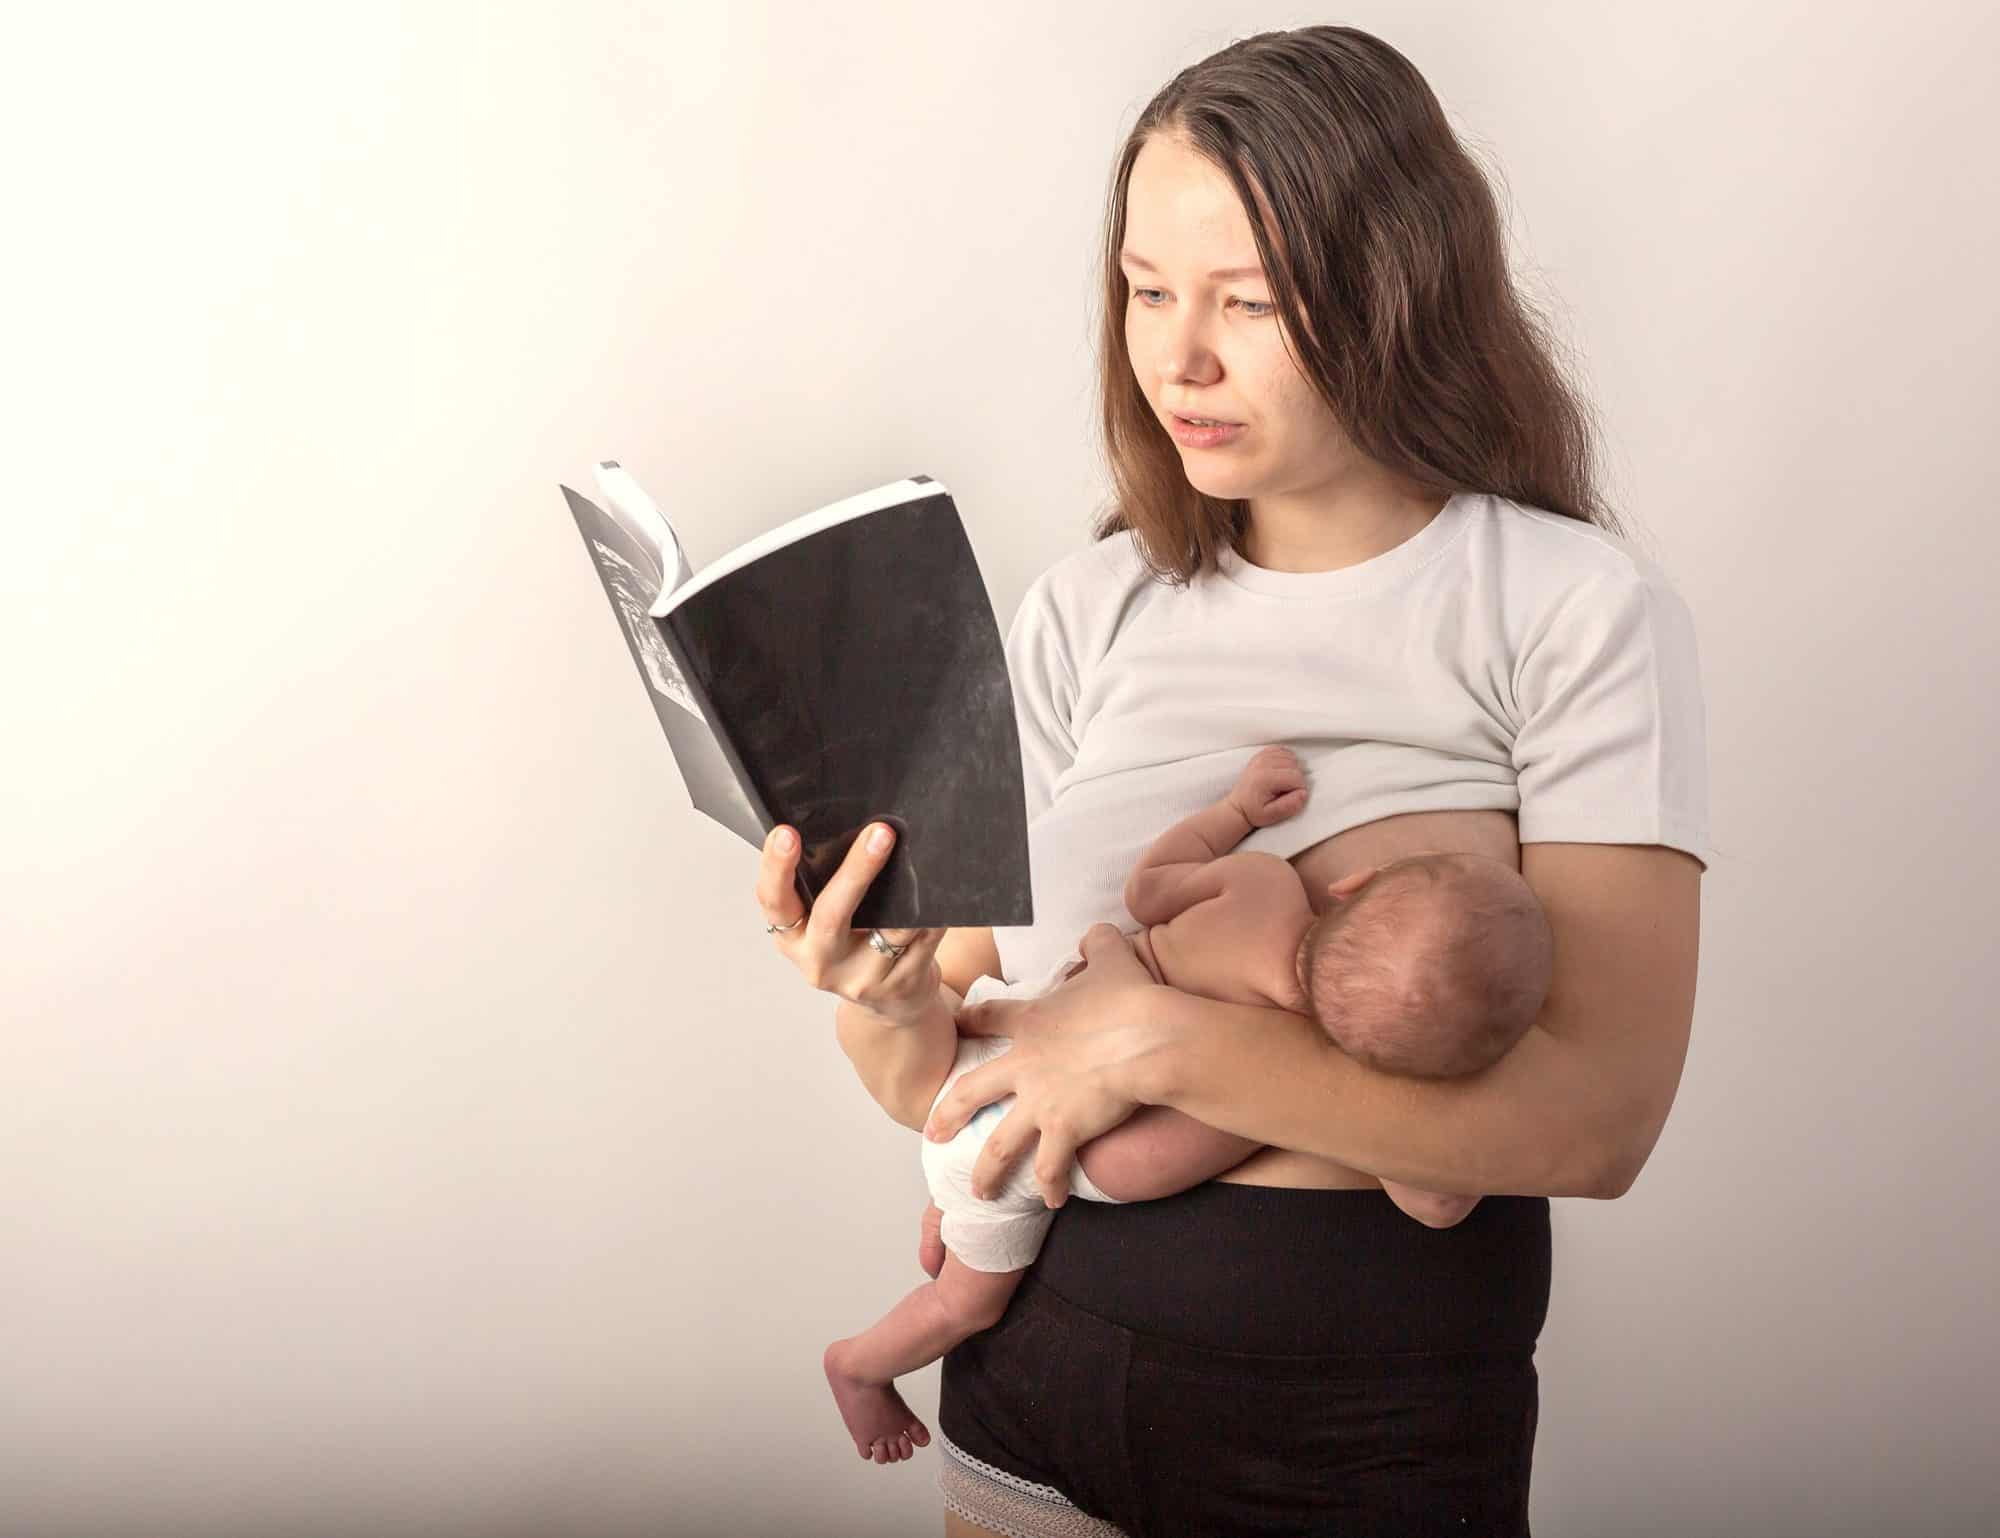 Por qué abandonan las mujeres la lactancia materna